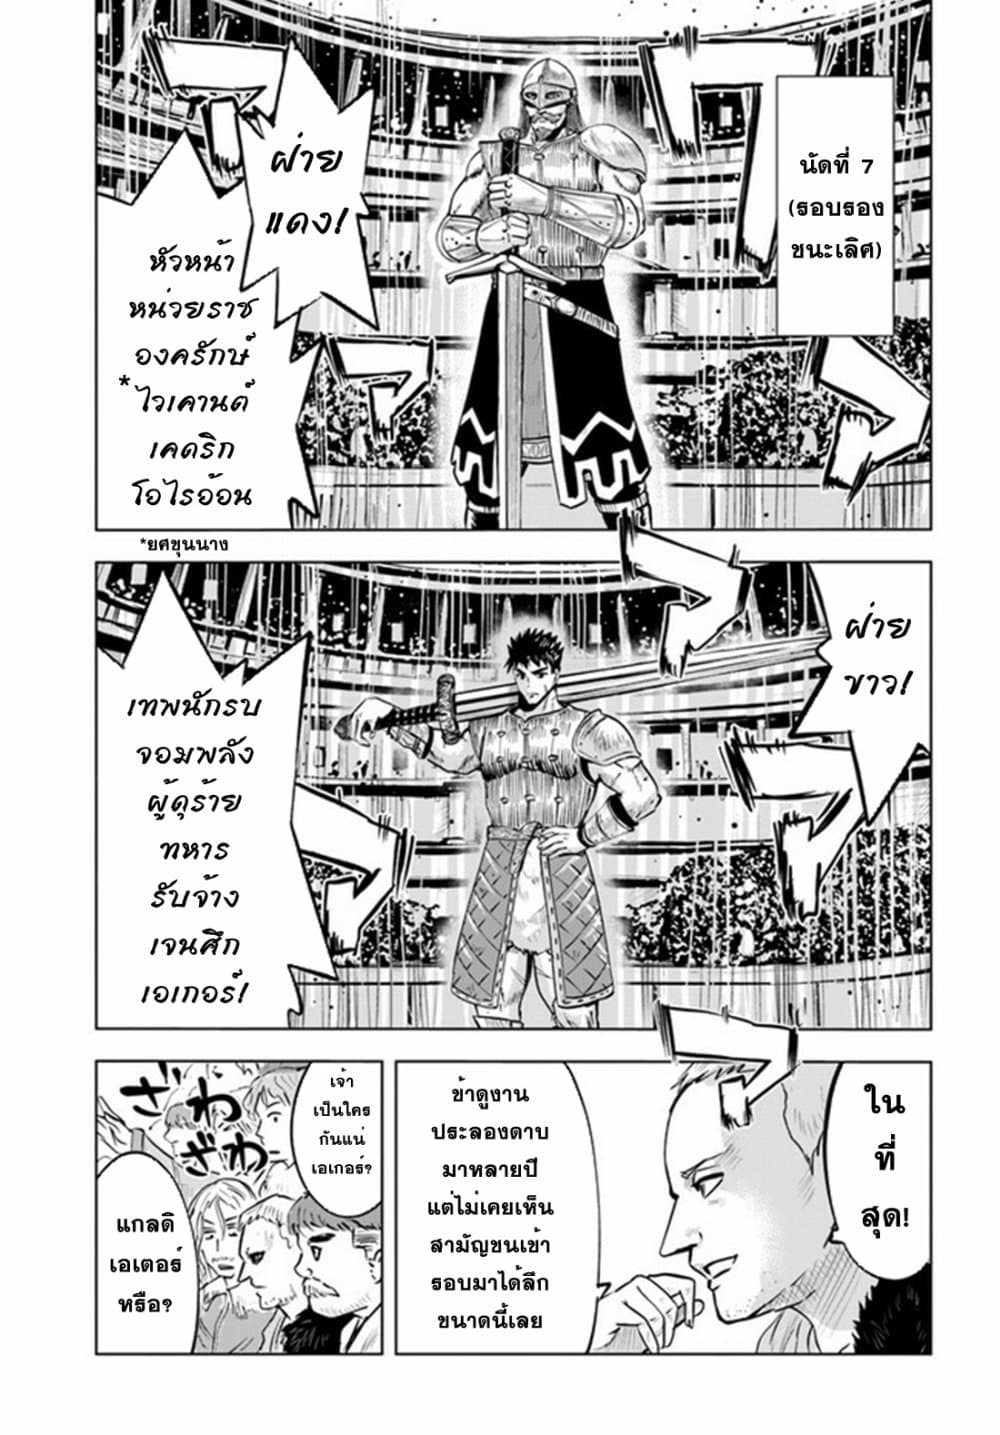 Oukoku e Tsuzuku Michi dorei Kenshi no Nariagari Eiyutan (Haaremu Raifu) - Road to the Kingdom Slave Swordsman the Rise of Heroes - Harem Life 21-21